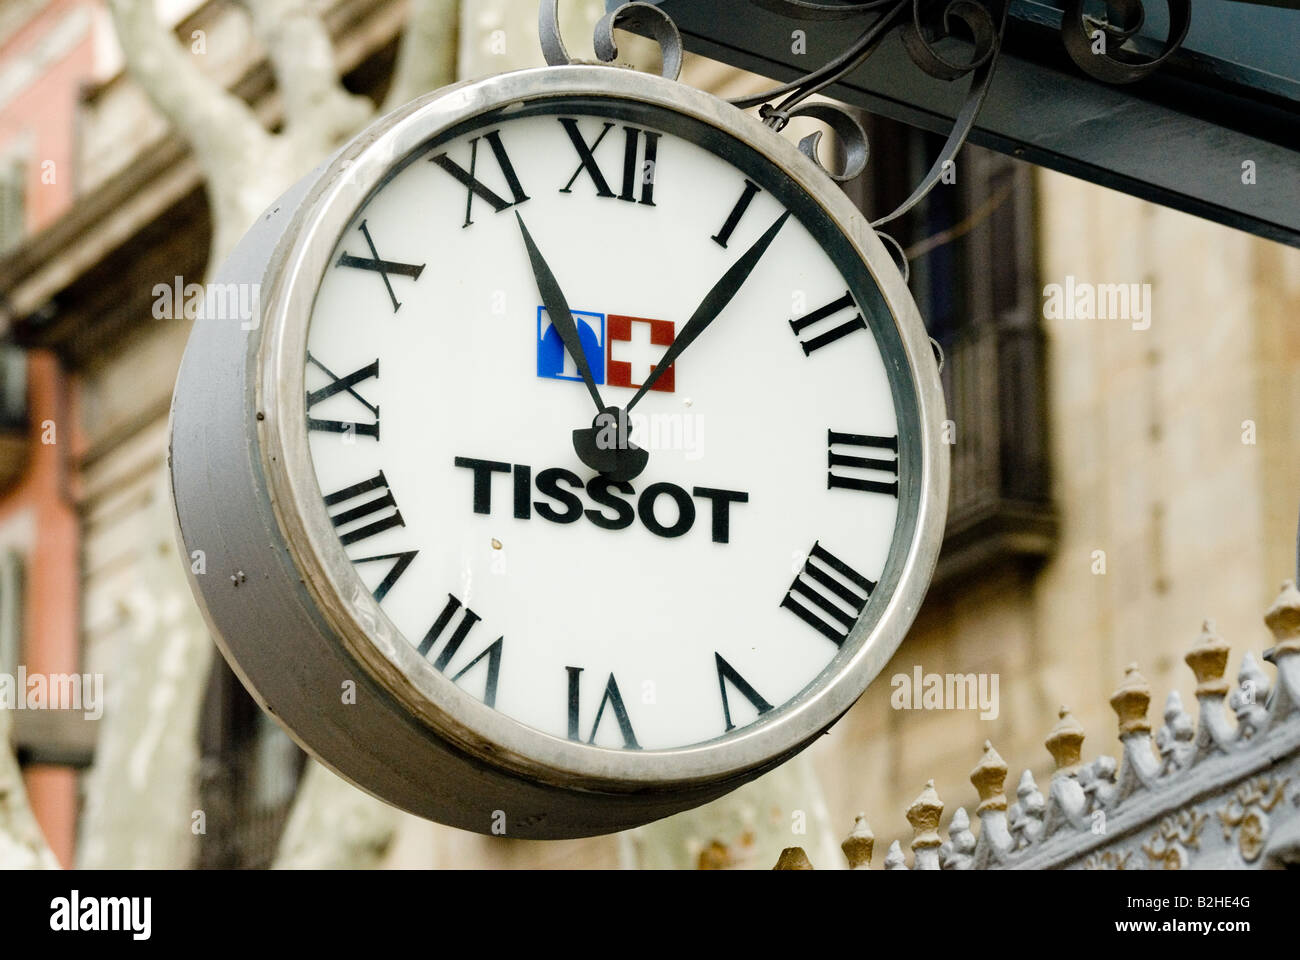 Tissot Uhr mit Schweizer Flagge außerhalb Wachsfigurenkabinett barcelona Stockfoto